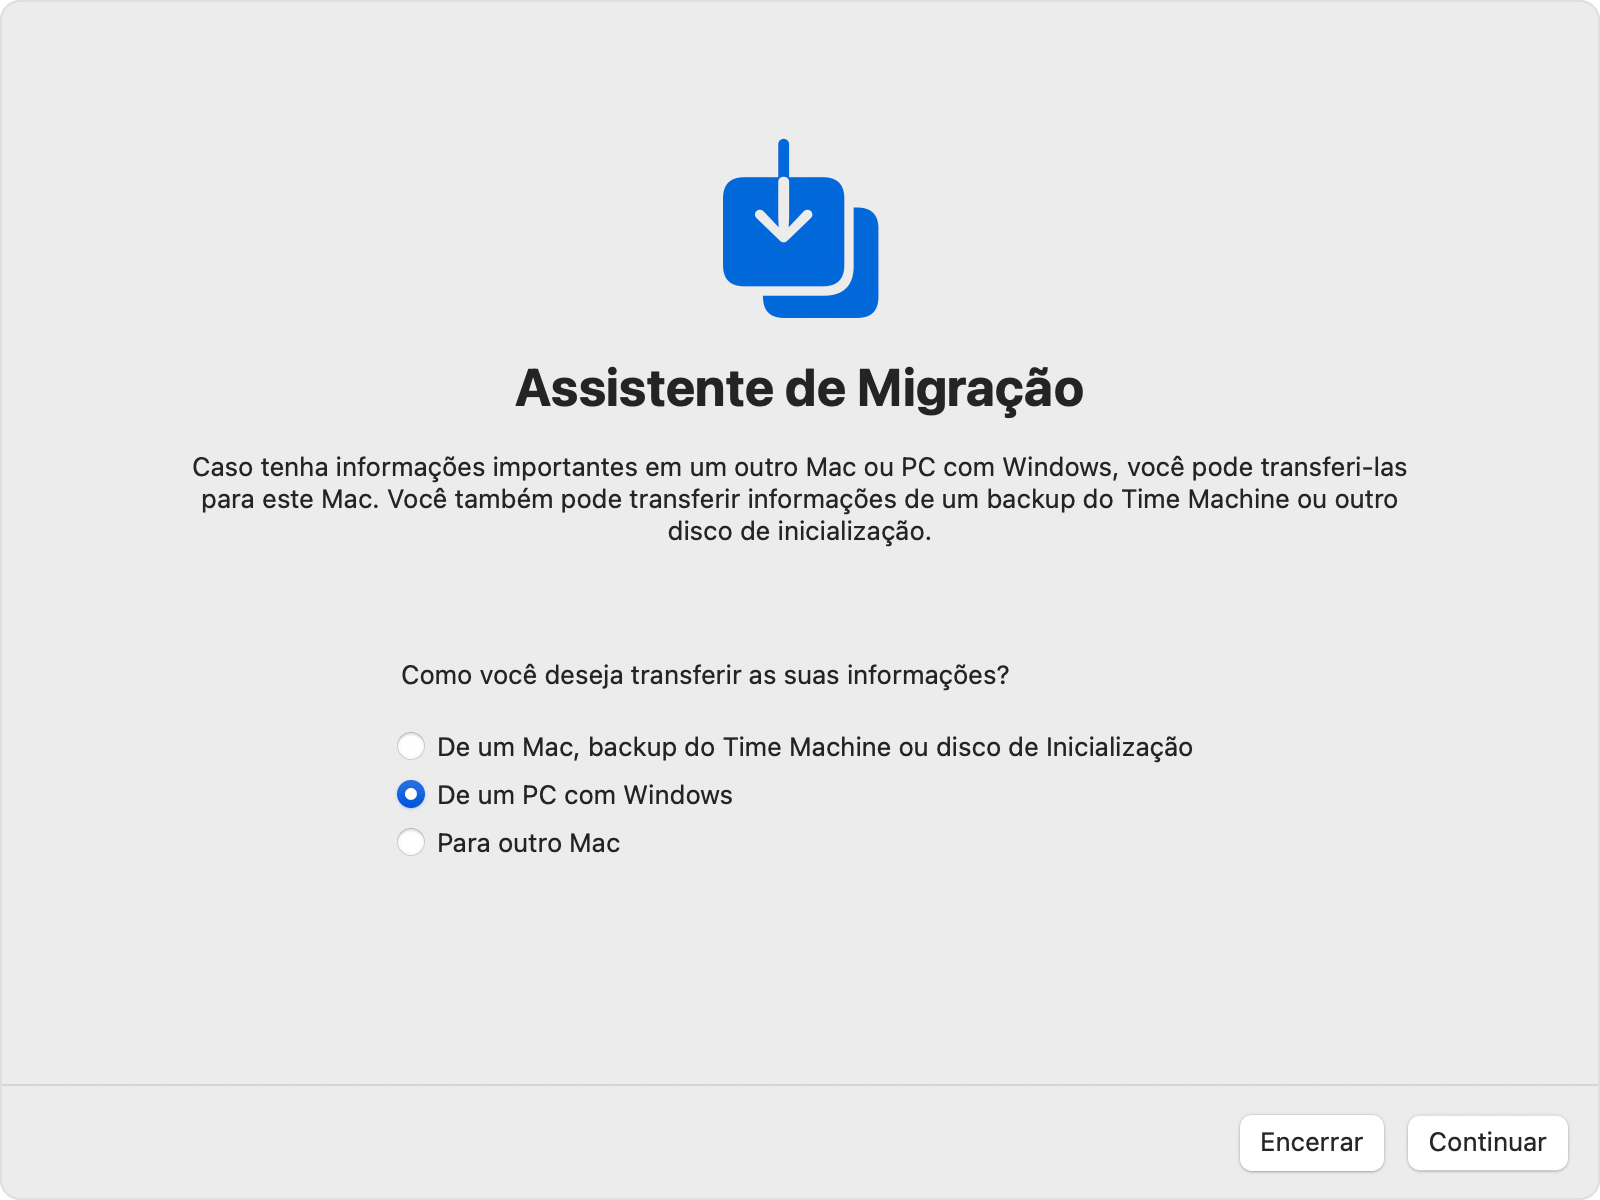 Assistente de Migração no Mac: transfira "De um PC com Windows"